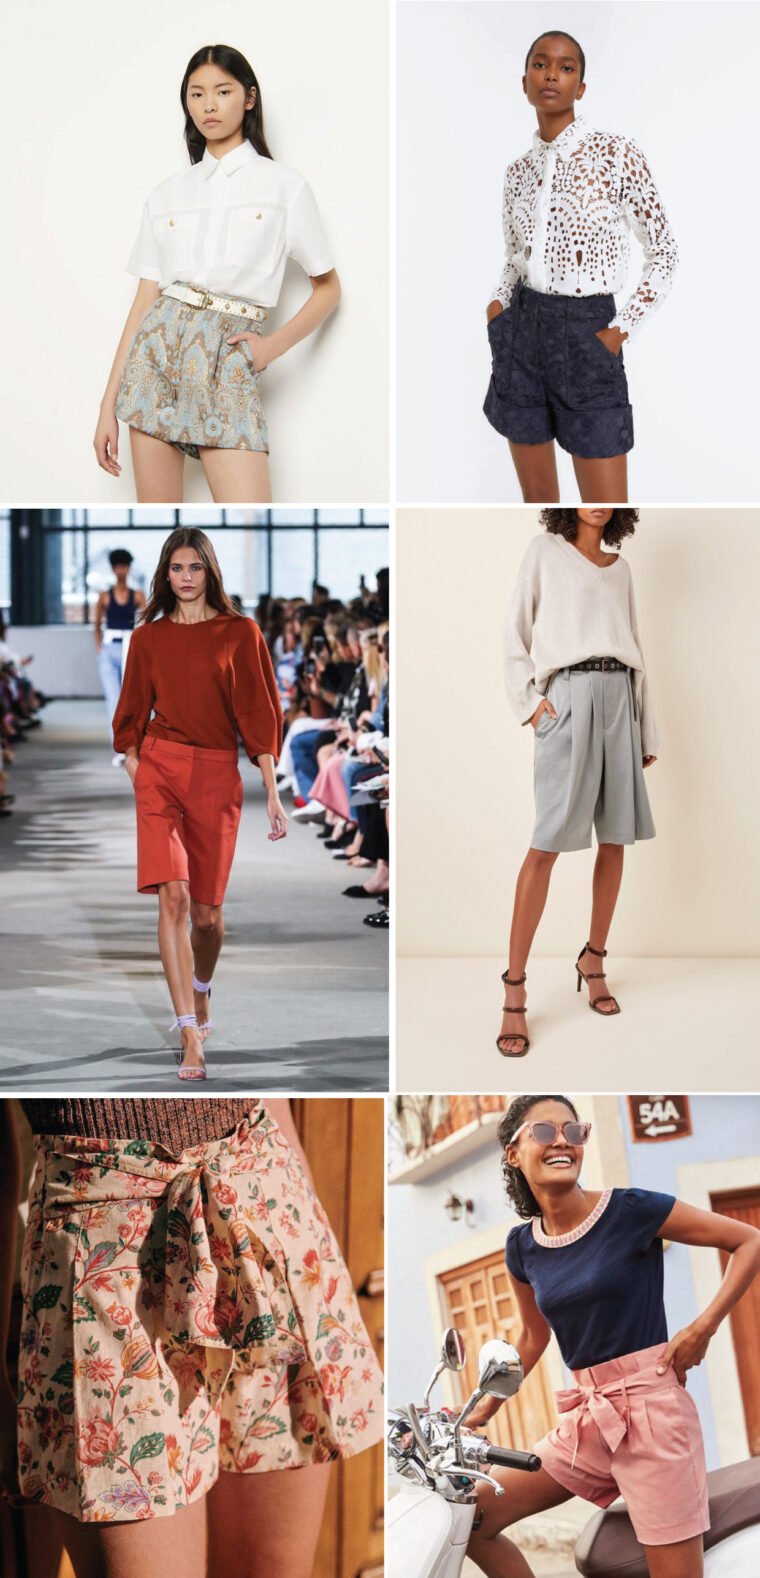 Lisboa walking shorts styling and fabric ideas